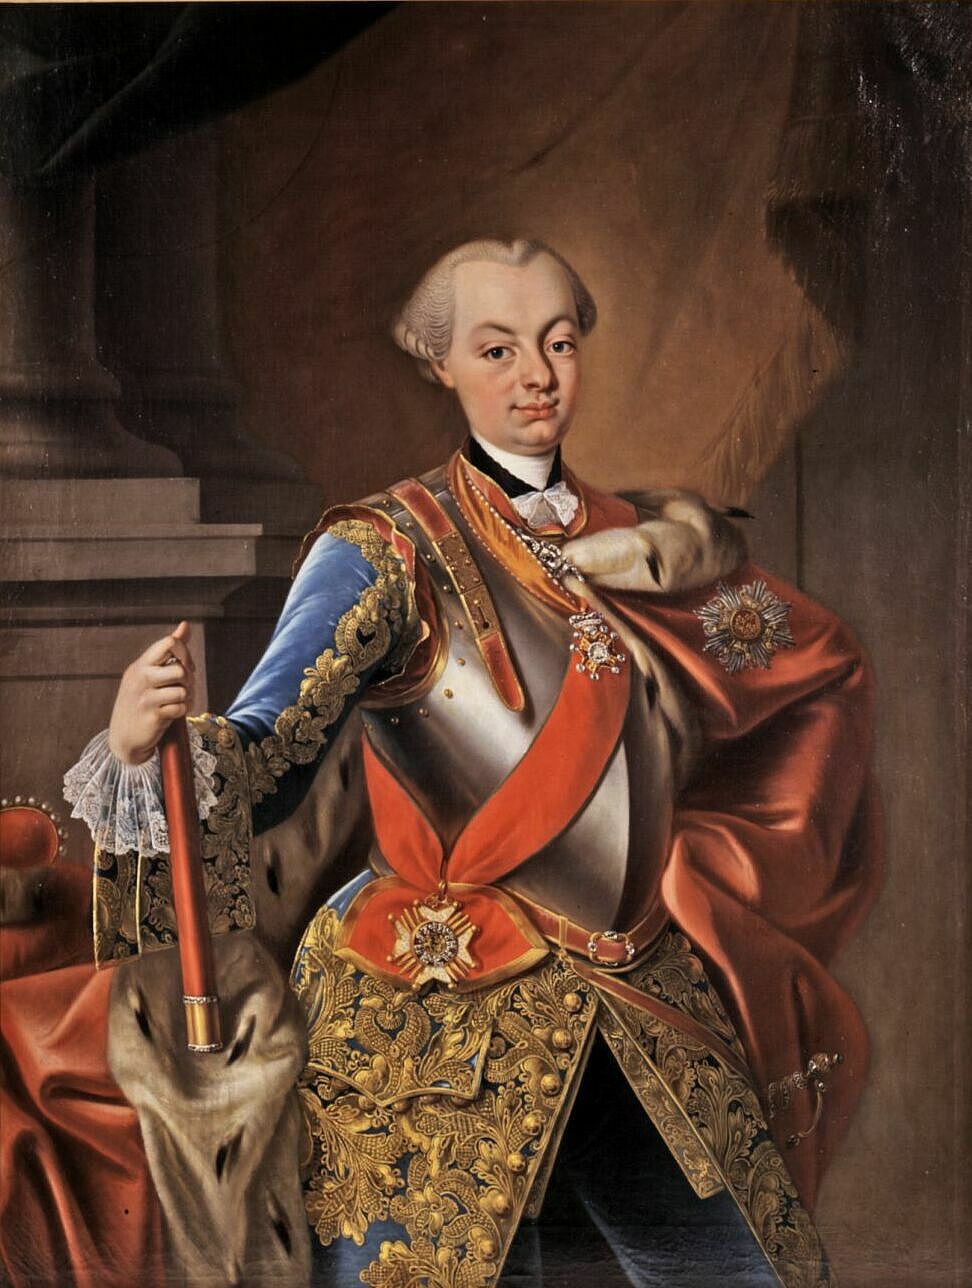 Gemälde mit dem Porträt von Karl Friedrich 